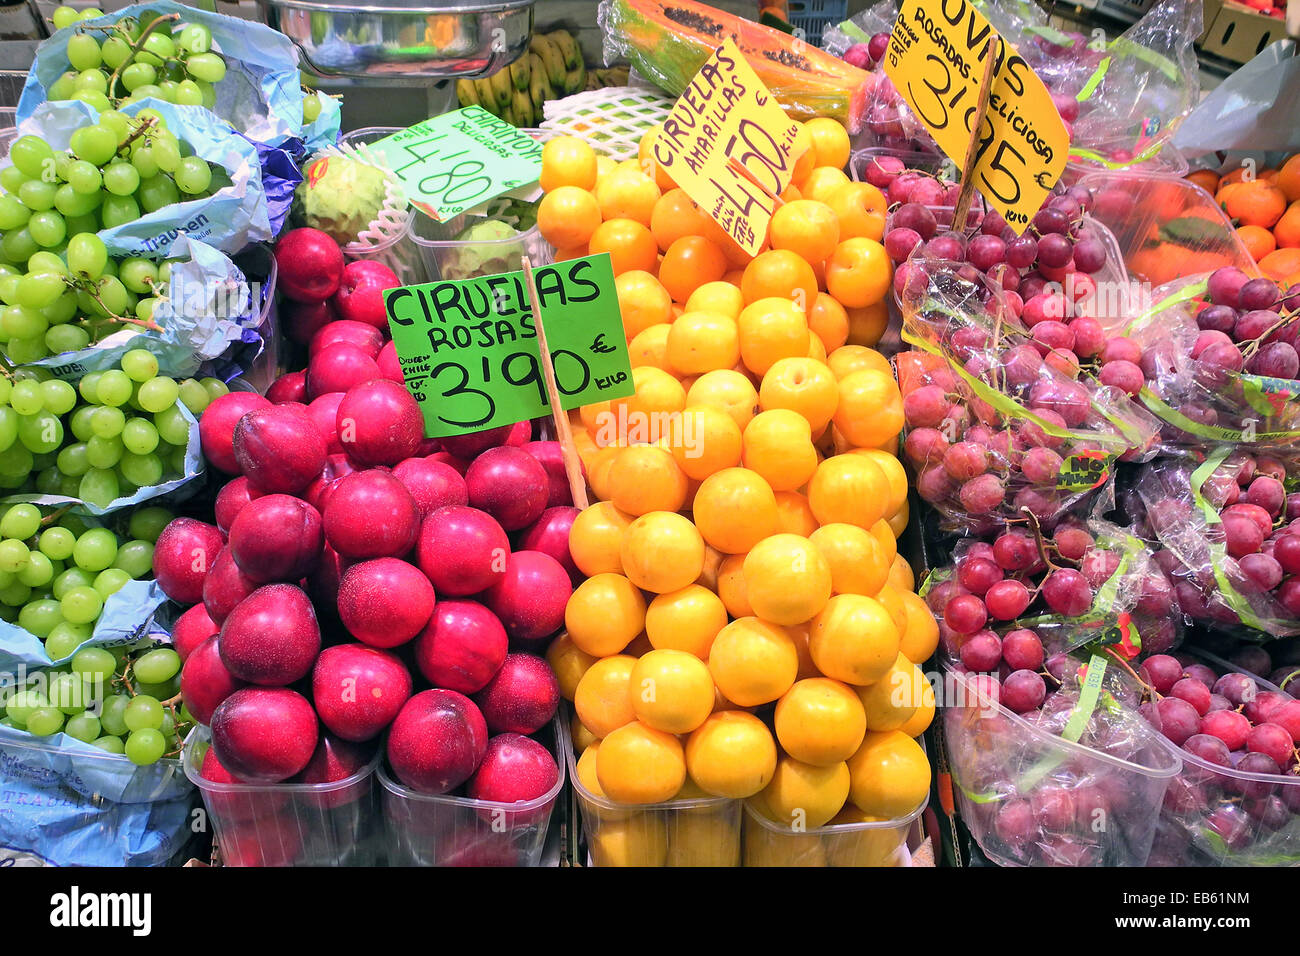 Marktstand mit Obst, Palma de Mallorca Stock Photo